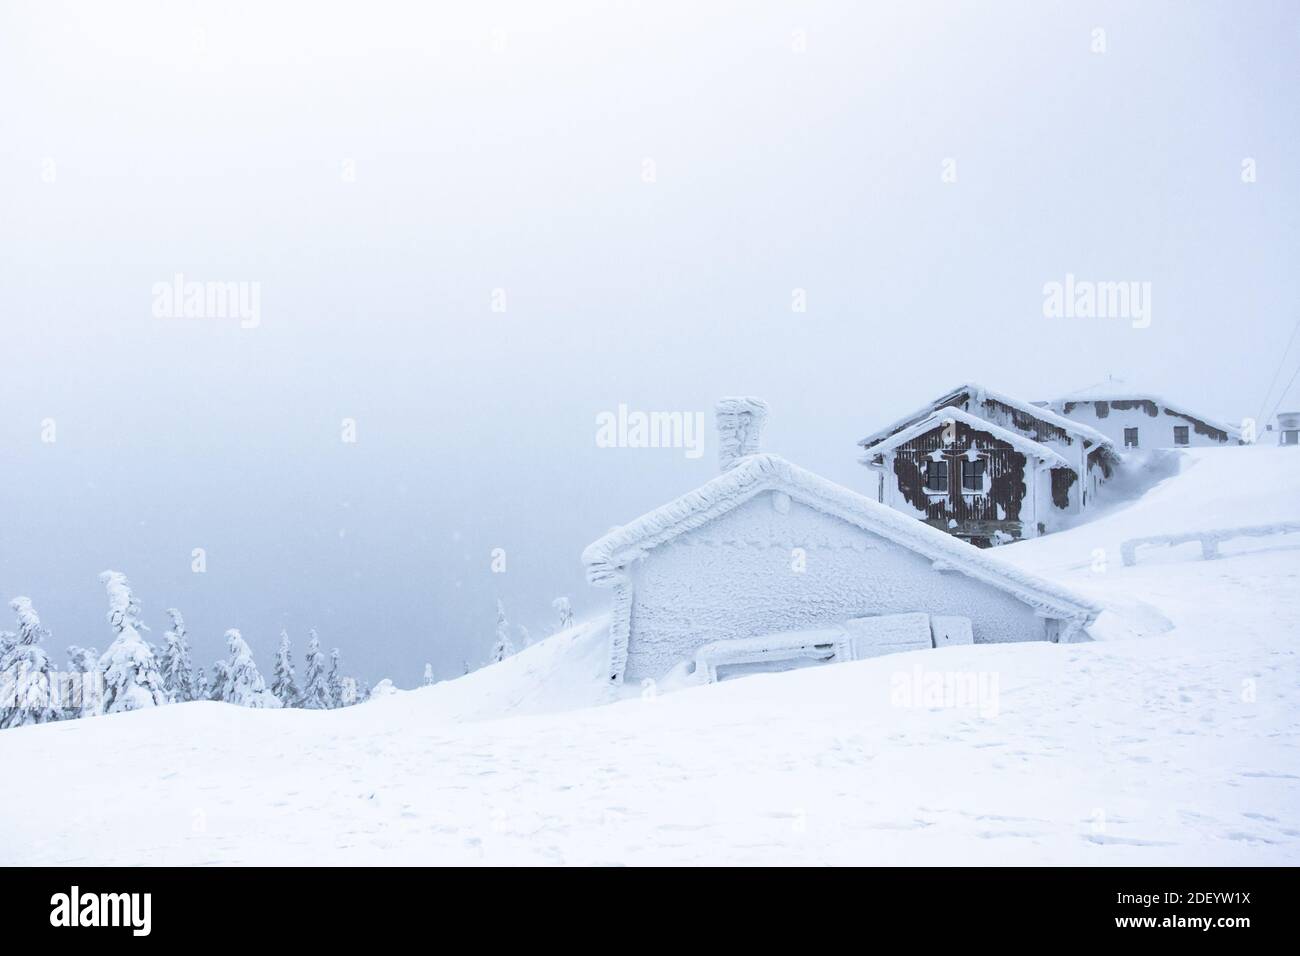 Paisaje panorama invernal con casa, árboles cubiertos de nieve, niebla. Fondo de invierno de nieve y heladas.pintoresco y hermoso invierno escena.Navidad Foto de stock